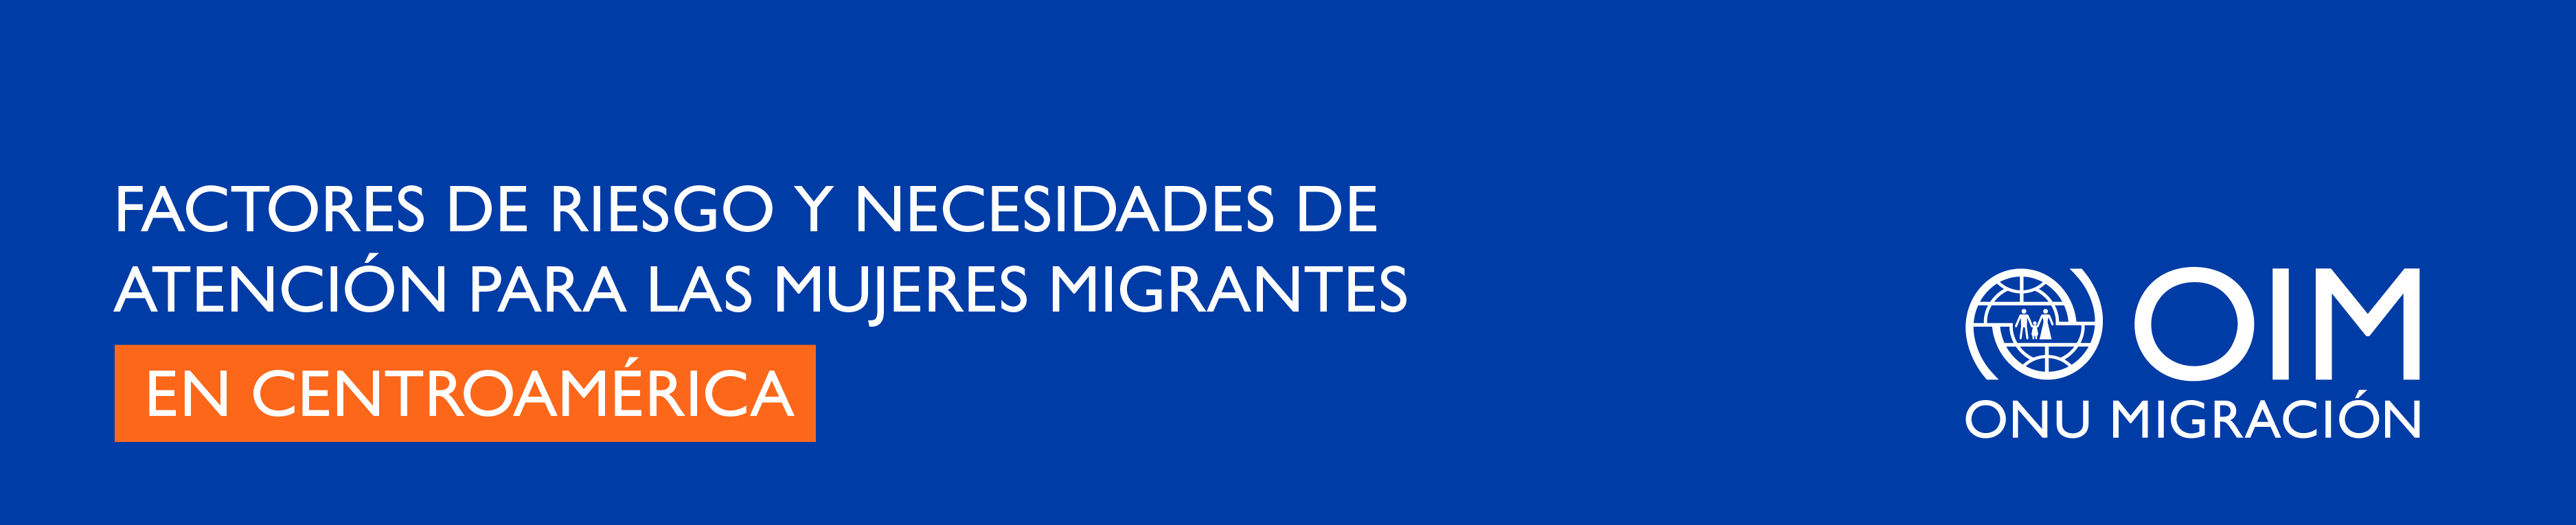 Factores de Riesgo y Necesidades de Atención para las mujeres migrantes en Centroamérica